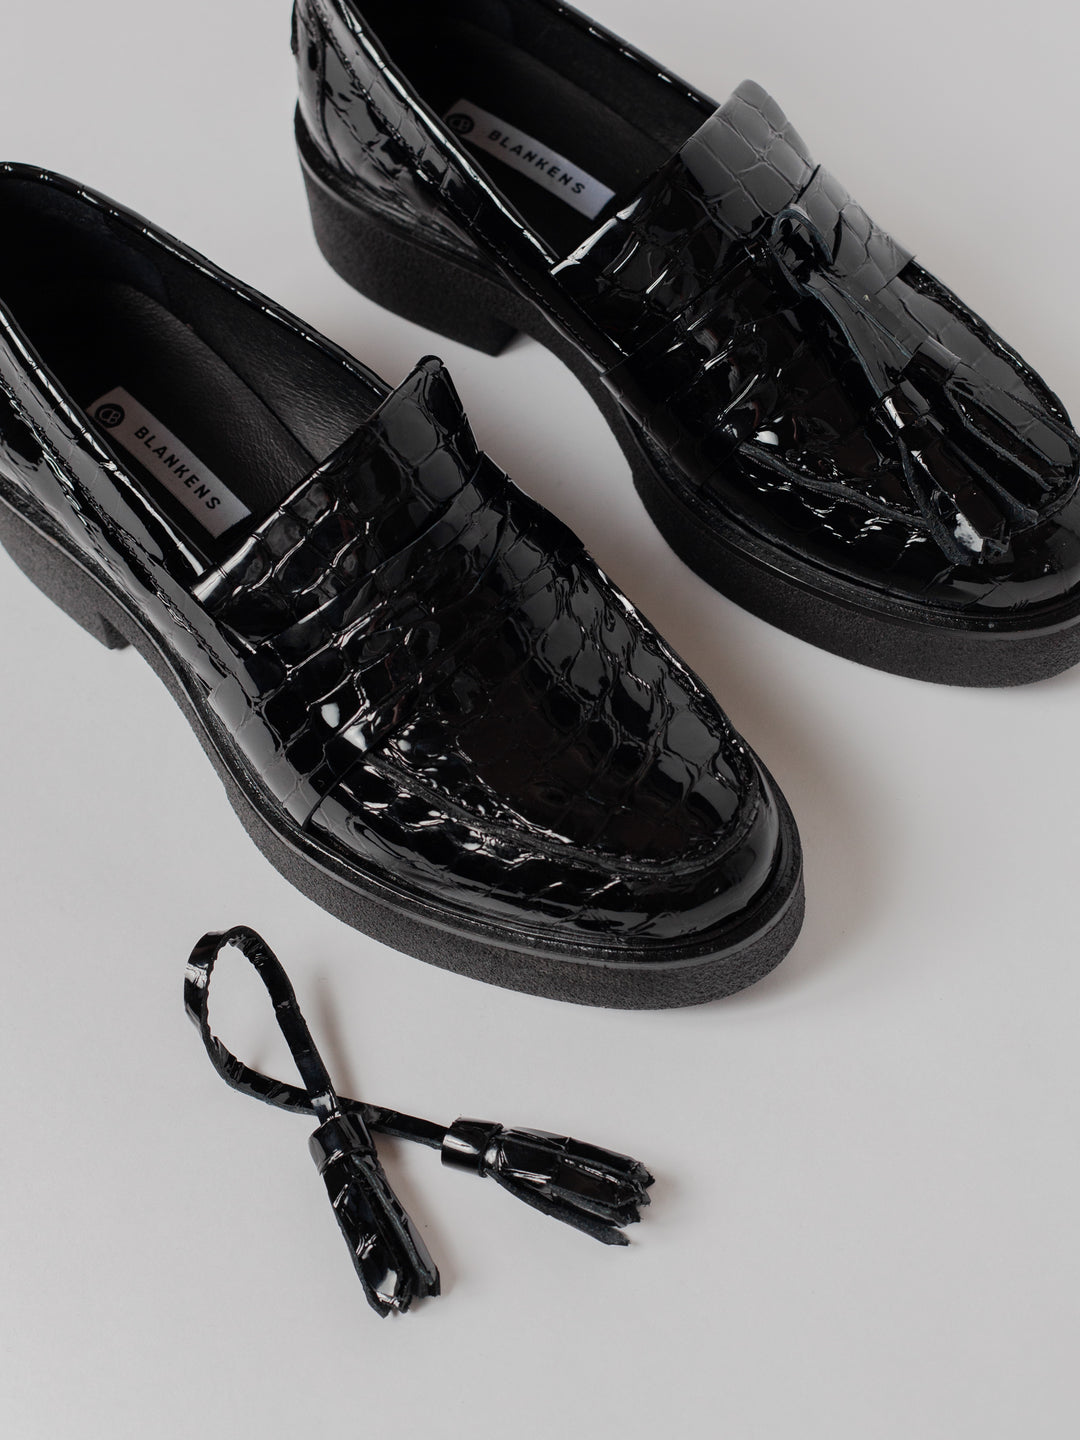 Blankens The Johanna black croc loafer with black tassel platform sole